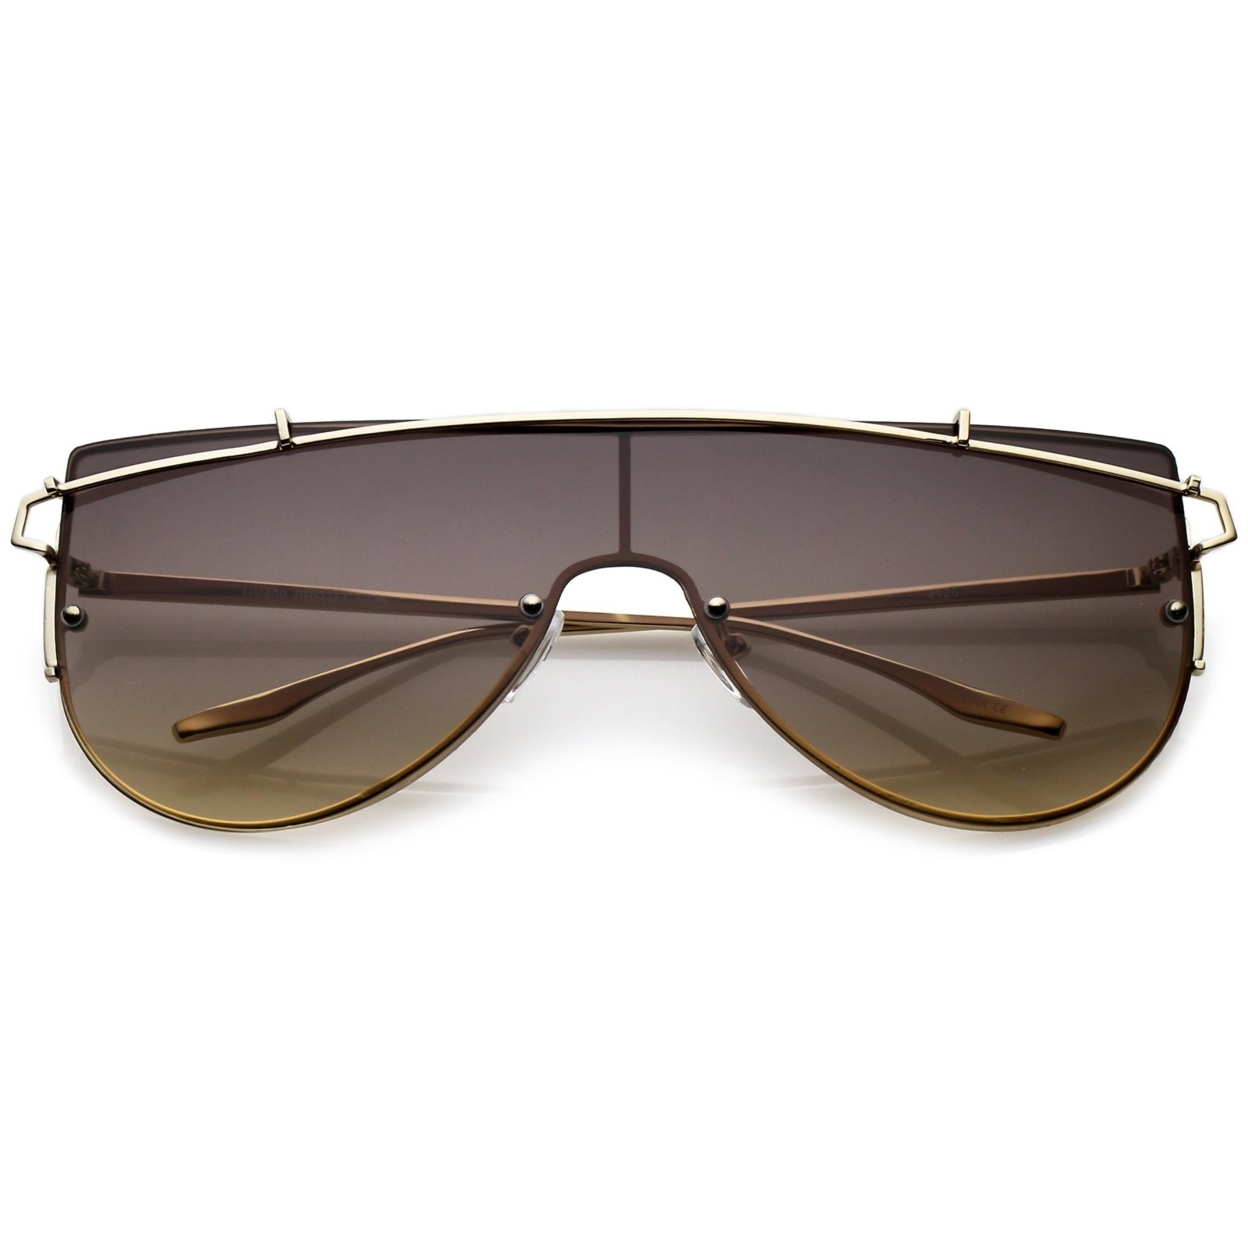 Futuristic Rimless Metal Crossbar Nuetral Colored Mono Lens Shield Sunglasses 64mm - Gold / Lavender